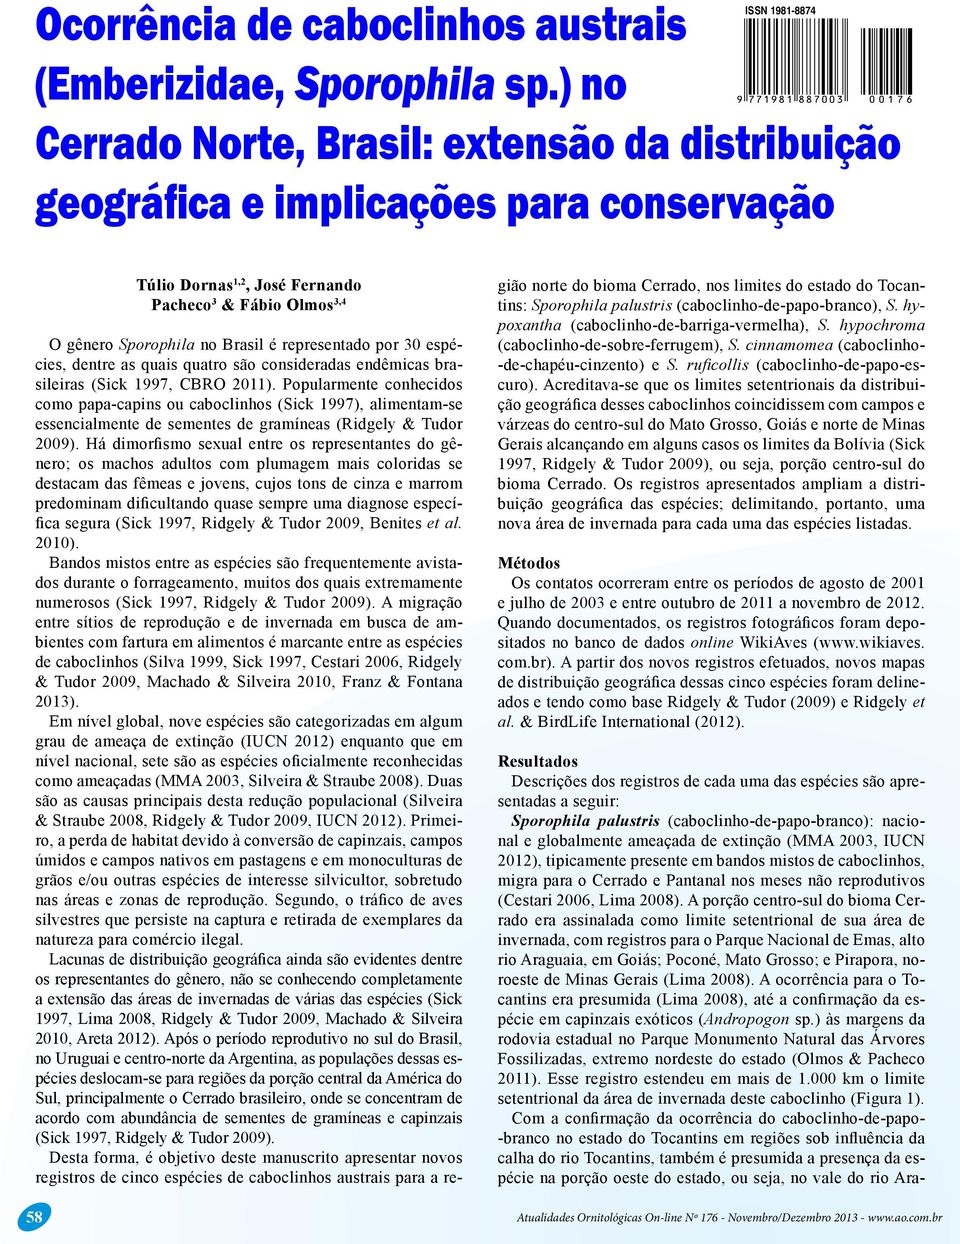 O gênero Sporophila no Brasil é representado por 30 espécies, dentre as quais quatro são consideradas endêmicas brasileiras (Sick 1997, CBRO 2011).